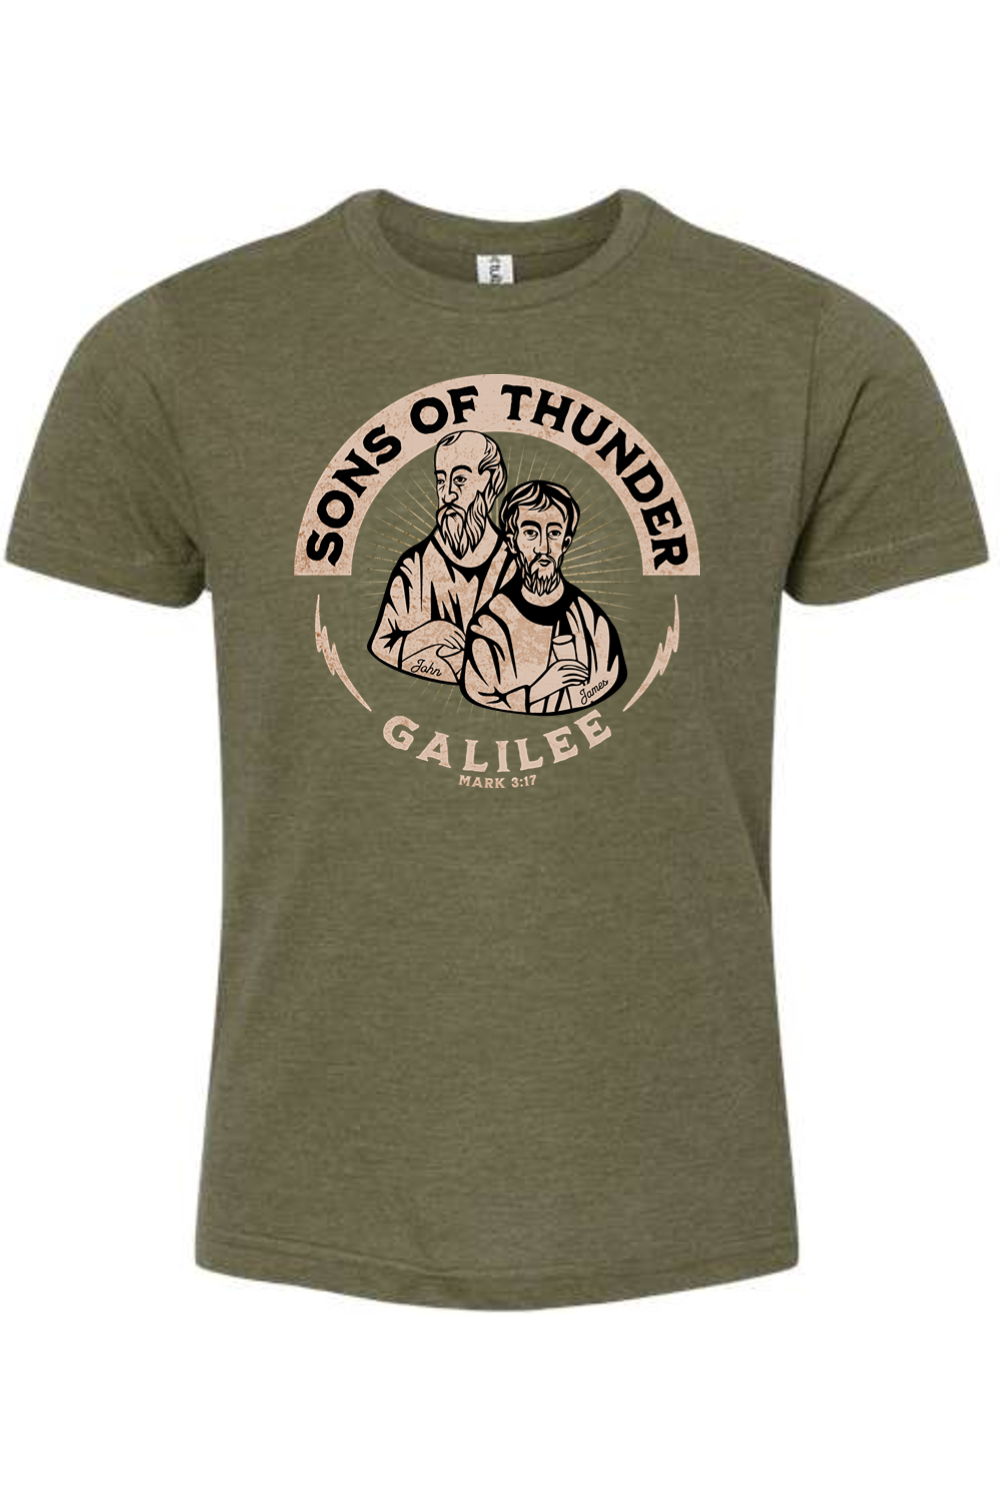 Sons of Thunder - John & James - Kids T-Shirt